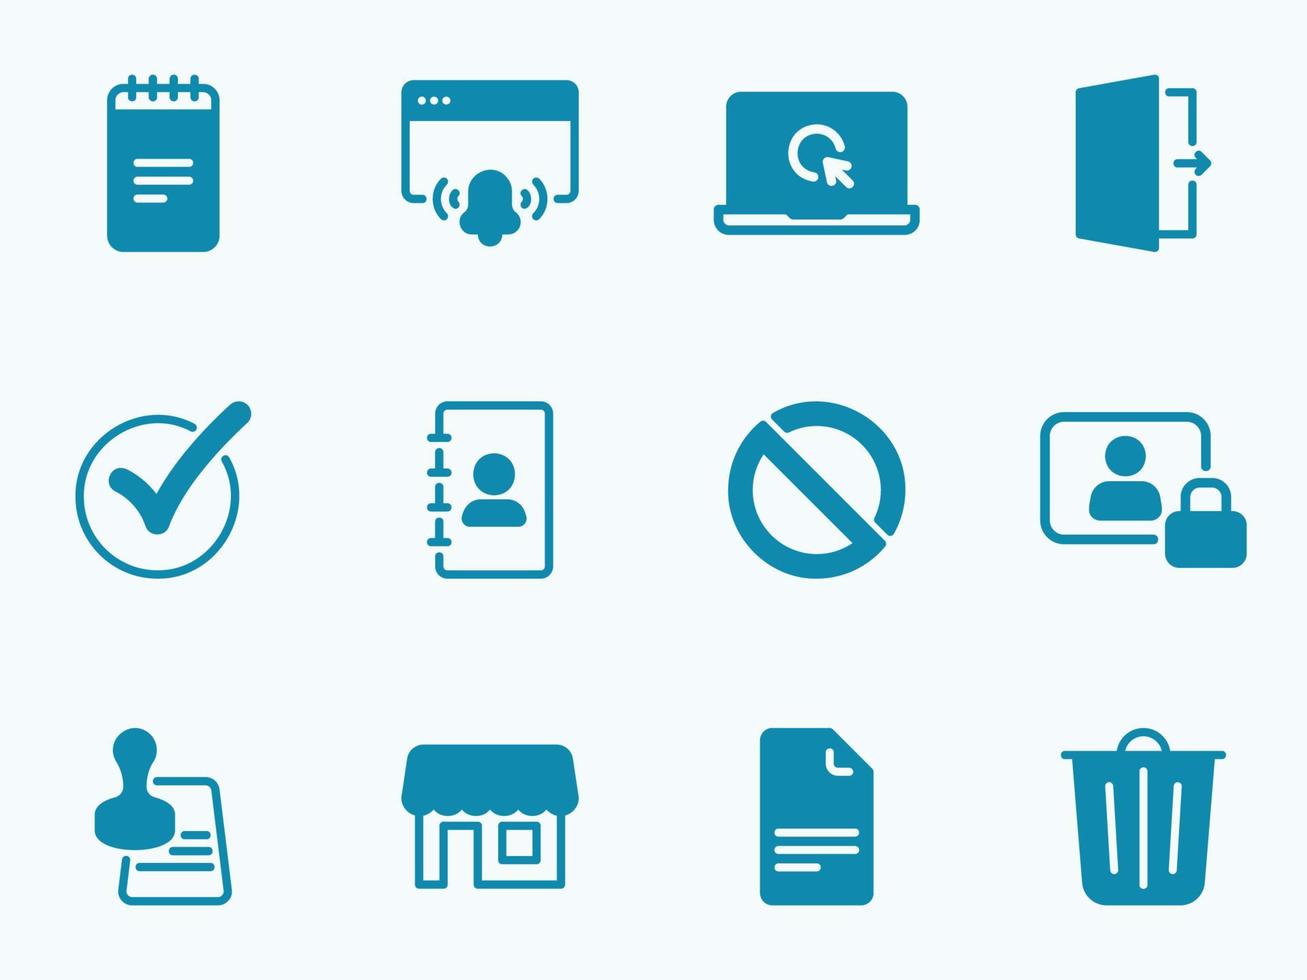 Simple vector icon on a theme files, documents, bureaucracy